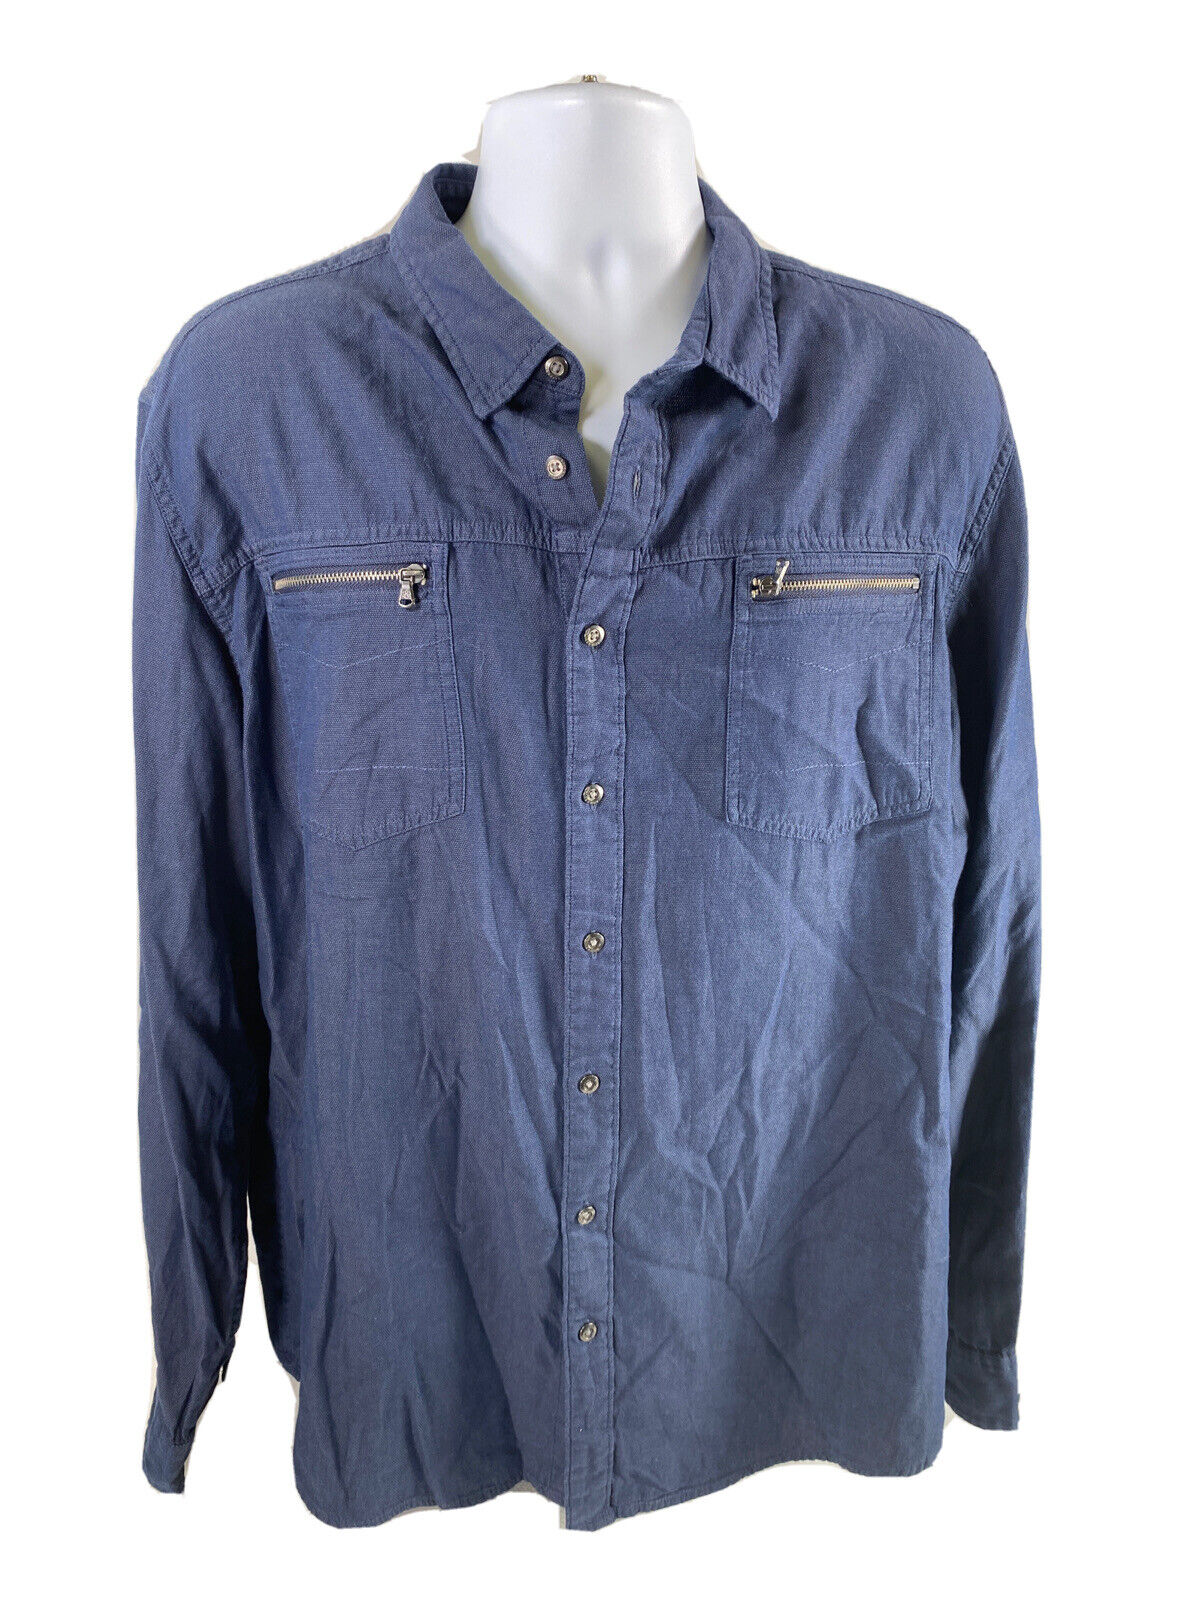 Rock &amp; Republic Camisa casual con botones de manga larga azul marino para hombre - XXL